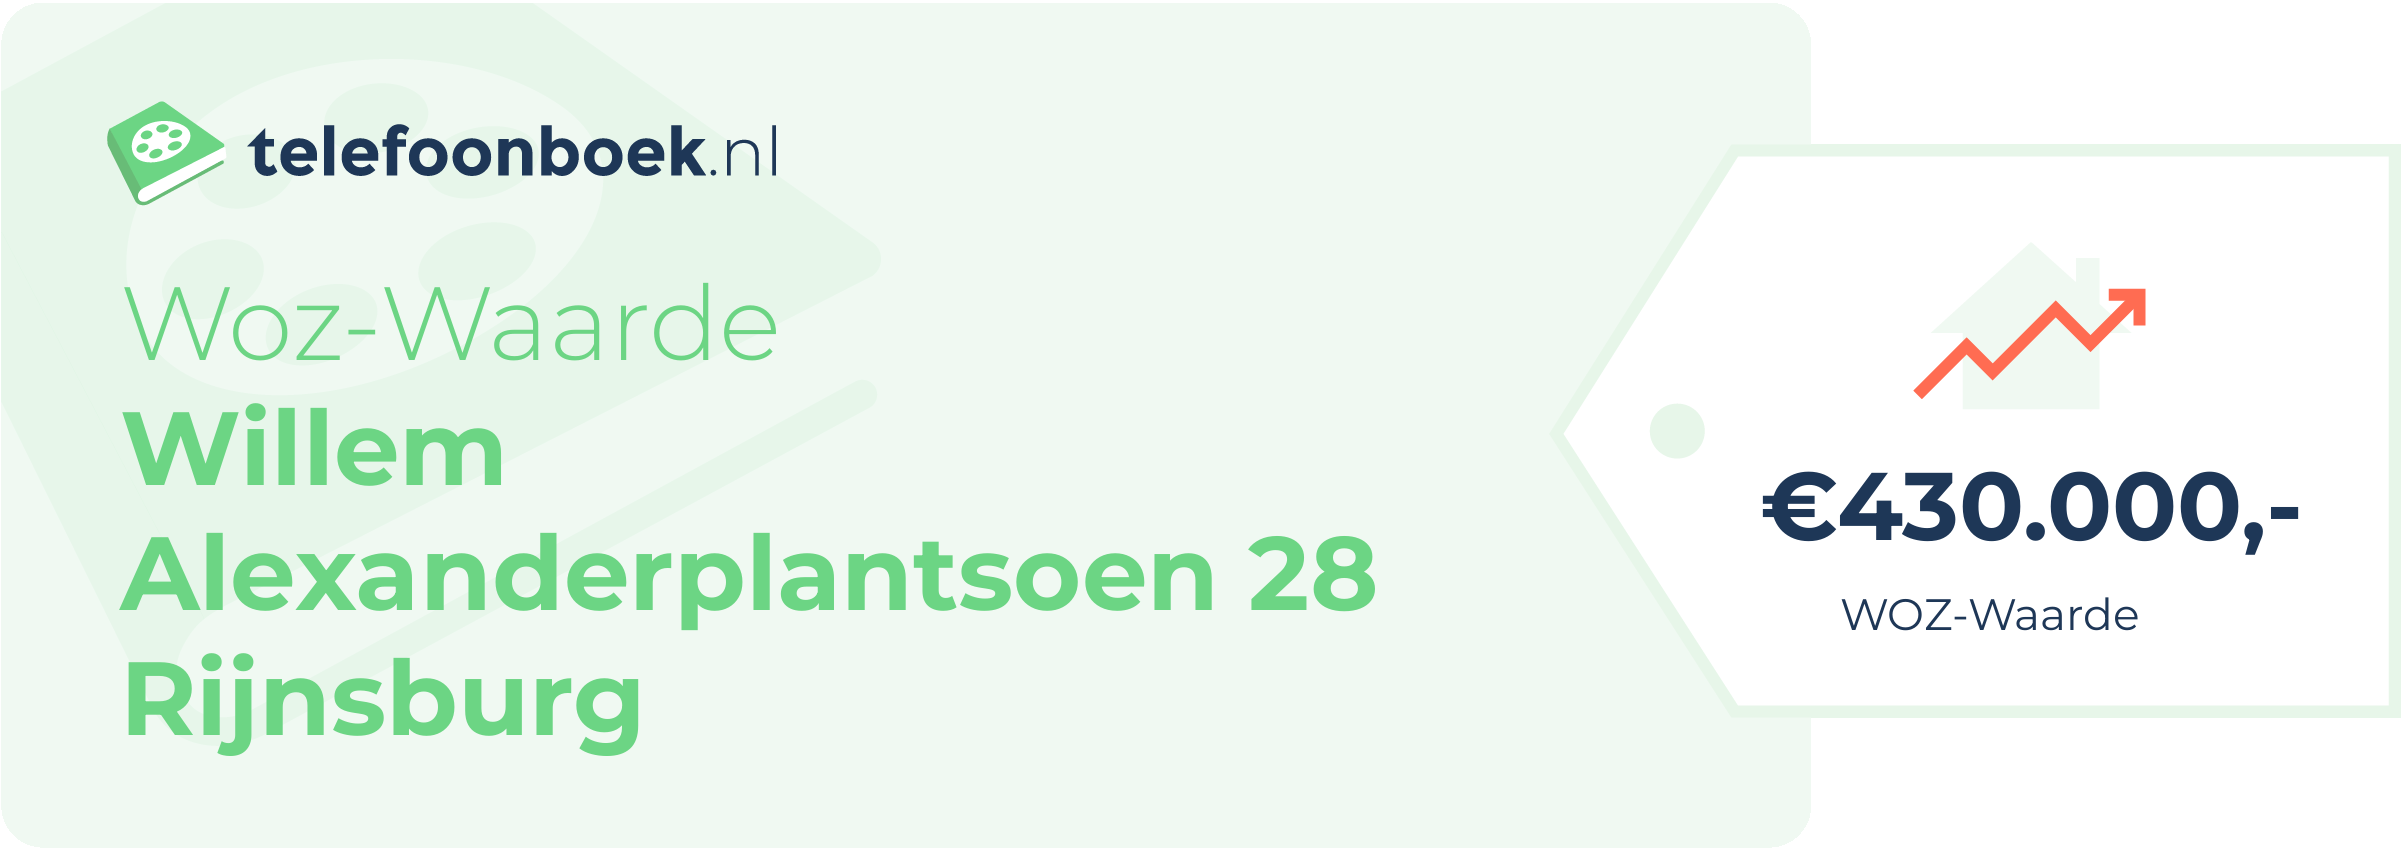 WOZ-waarde Willem Alexanderplantsoen 28 Rijnsburg